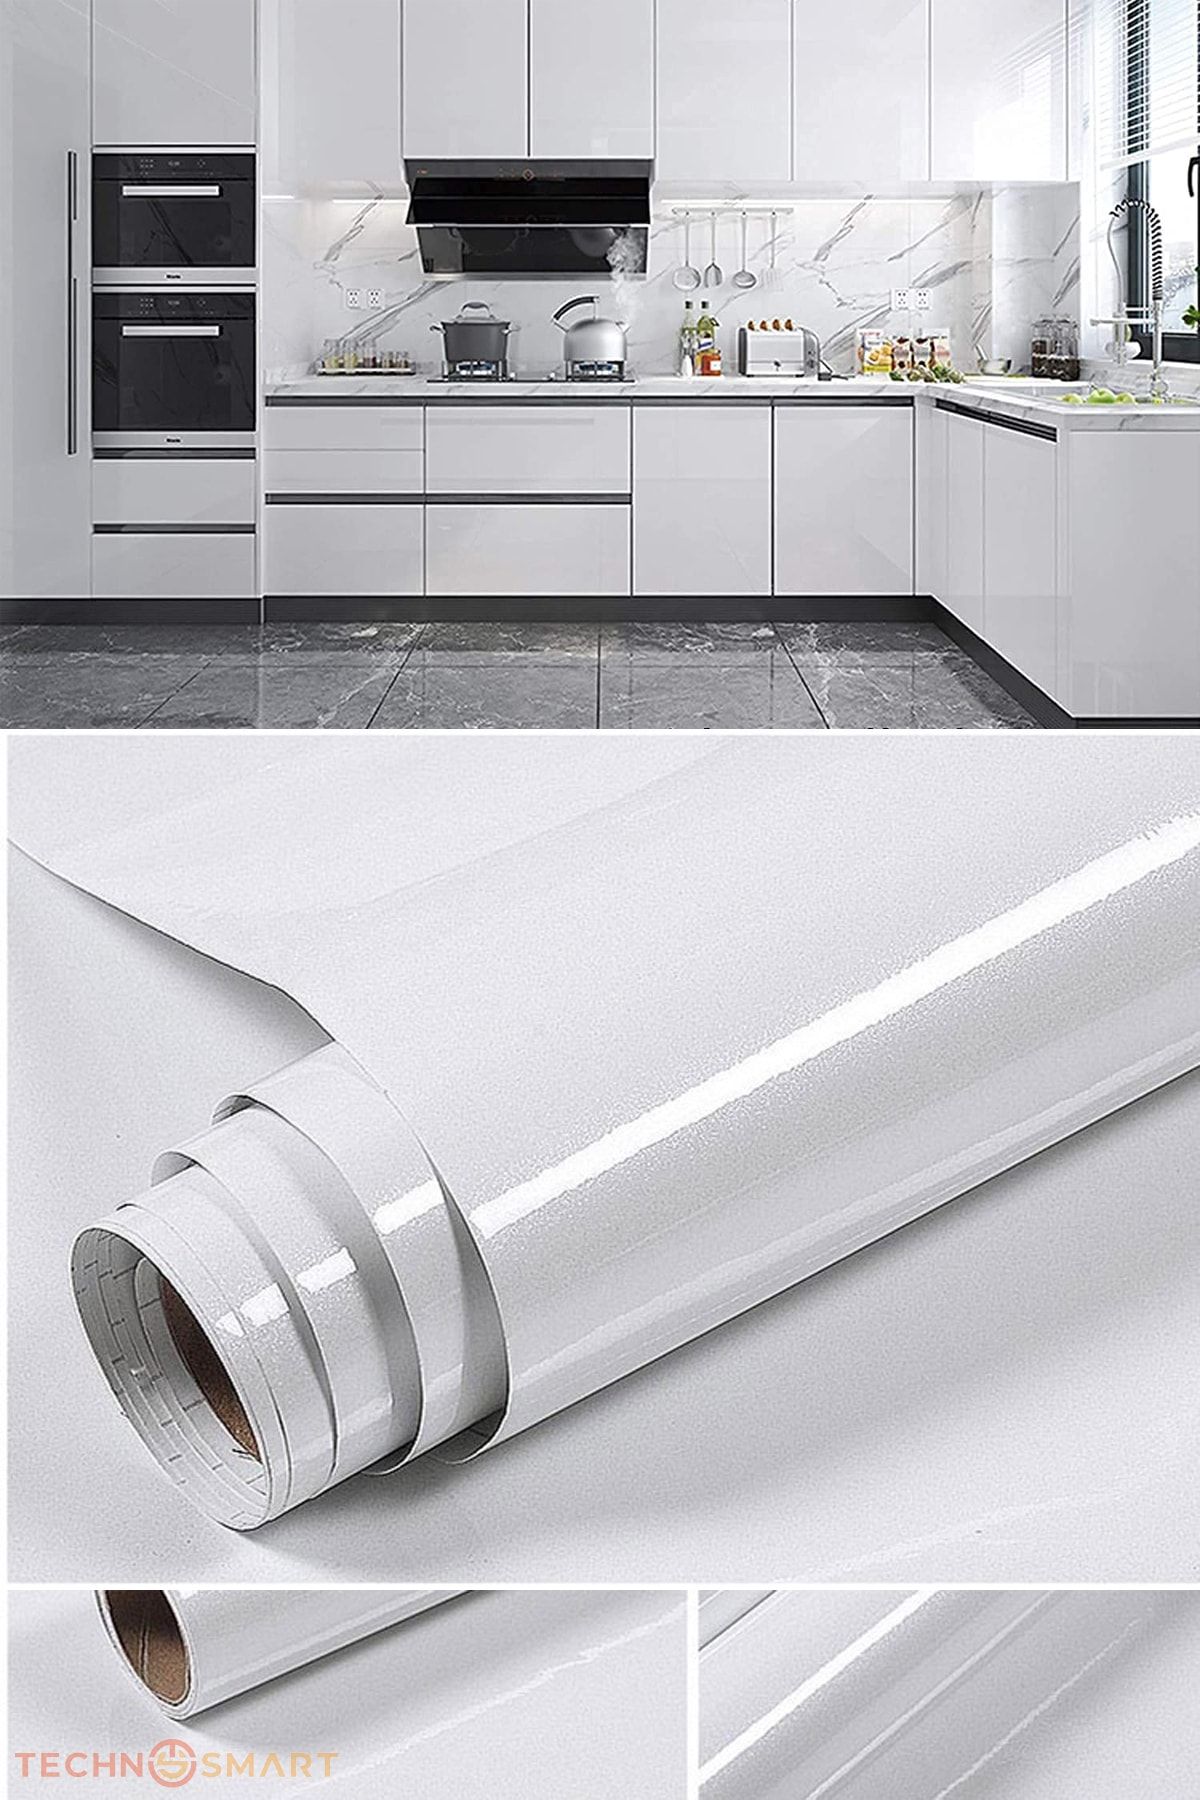 TechnoSmart 60x100cm Beyaz Simli Kendinden Yapışkanlı Parlak Duvar Kağıdı Mutfak Banyo Dolap Kaplama